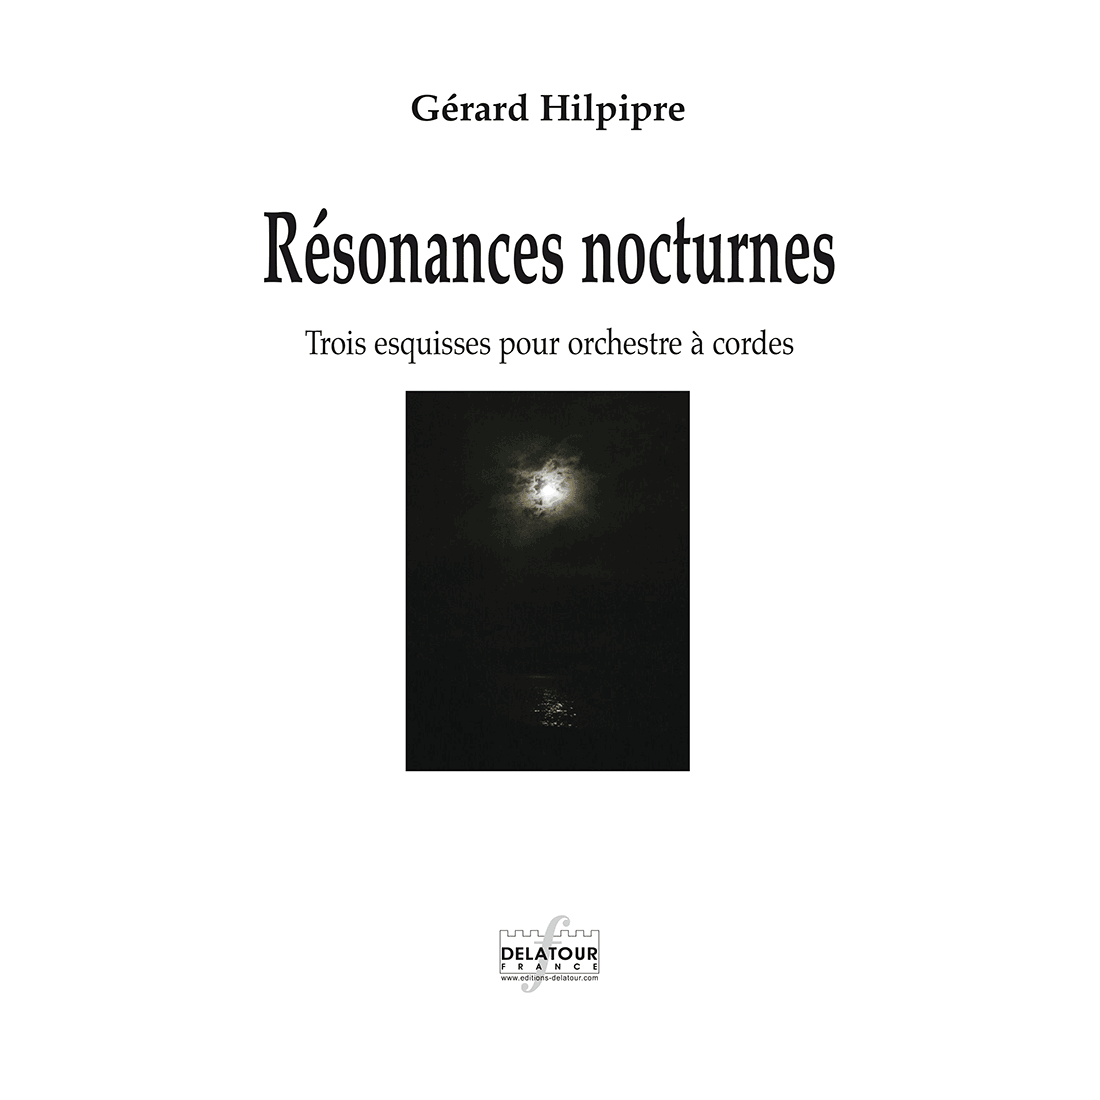 Résonances nocturnes for string orchestra (PARTS)